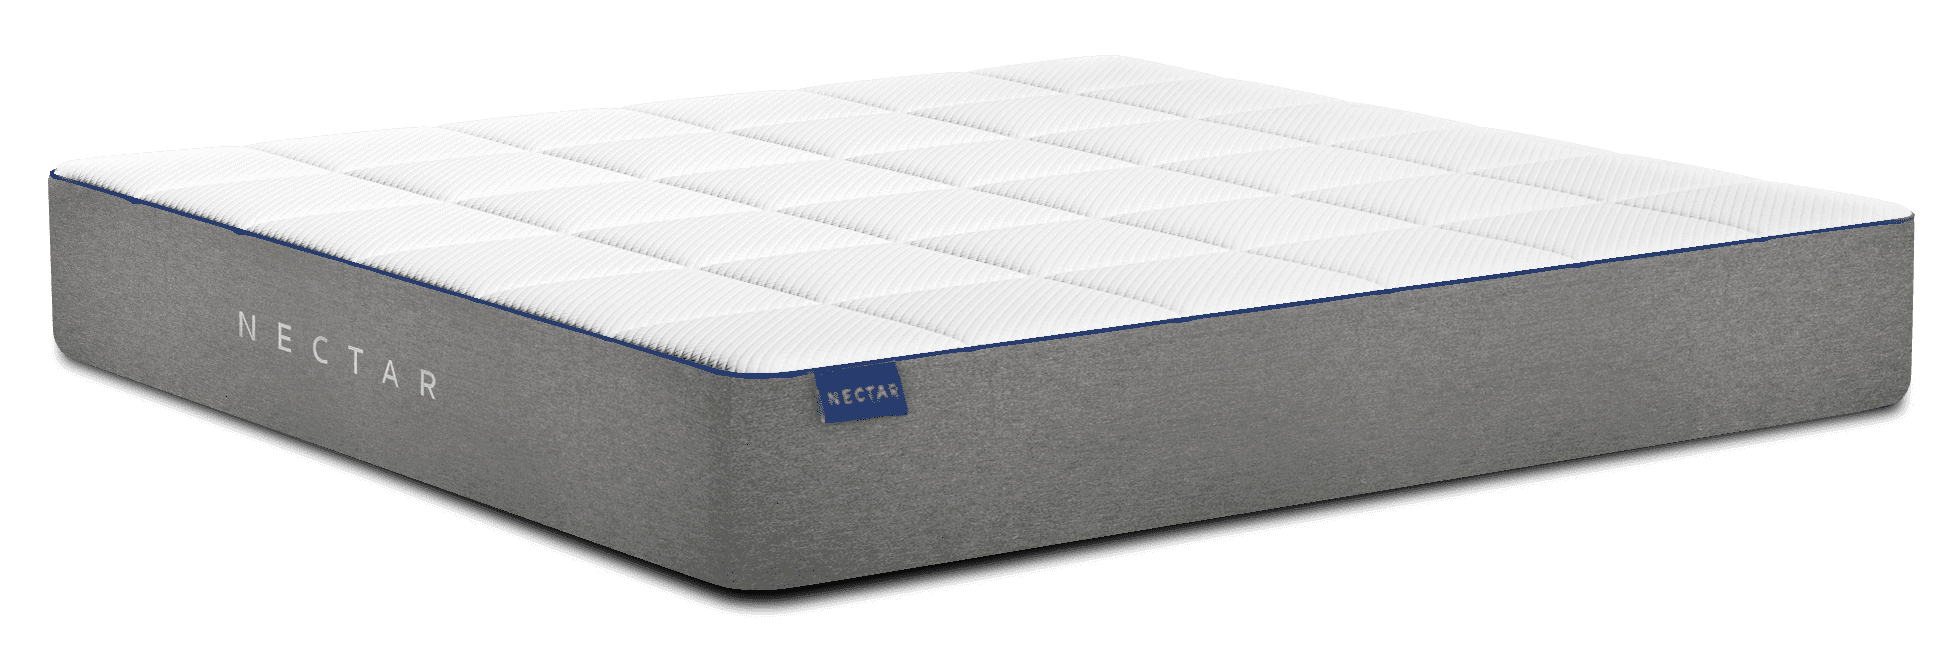 nectar queen size memory foam mattress